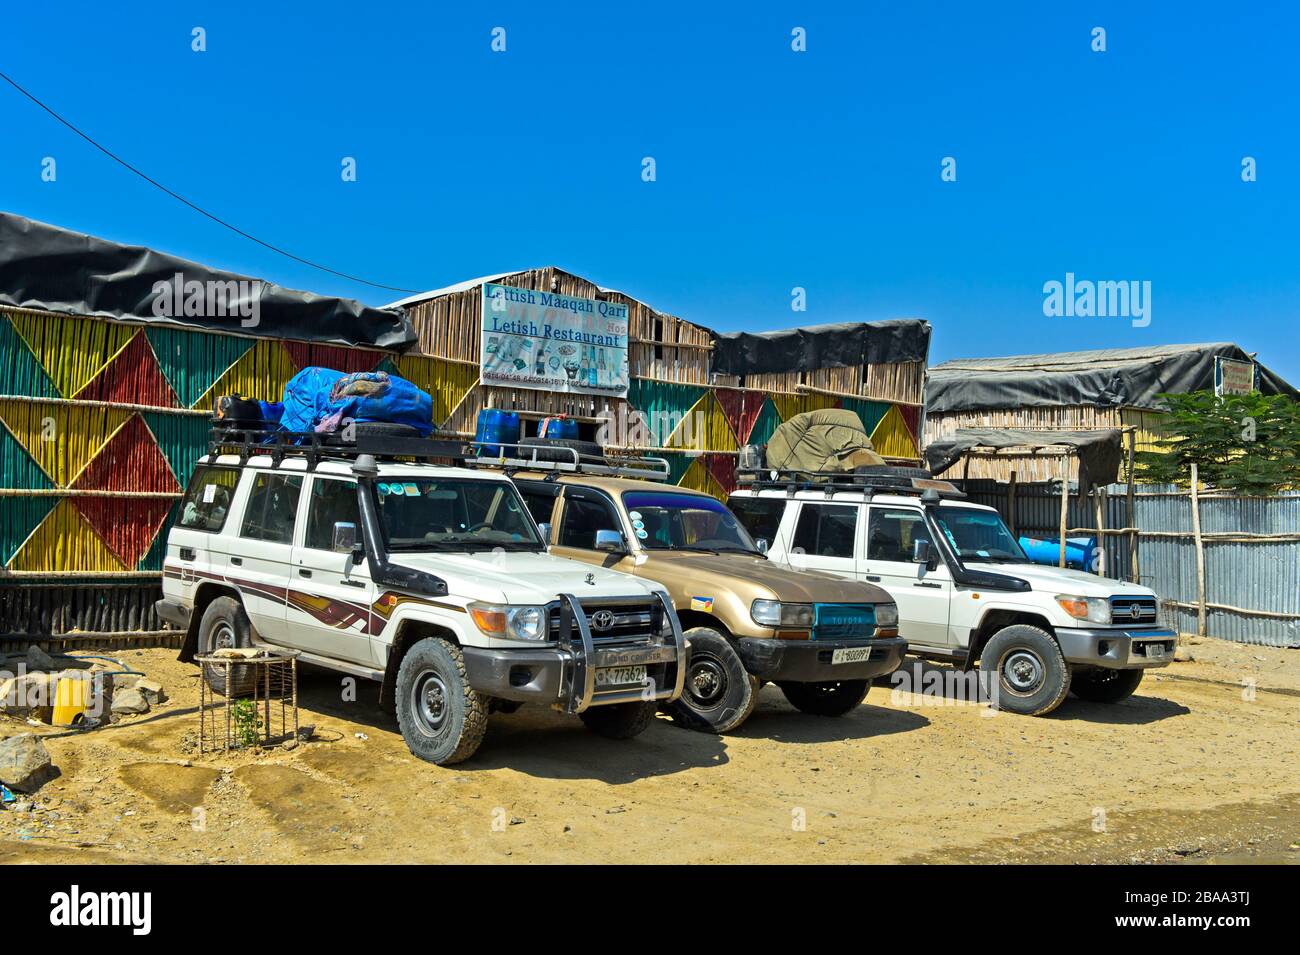 Véhicules tout-terrain en attente au restaurant Letish pour le trajet jusqu'à la zone géothermique de Dallol, Berhale, région d'Afar, Ethiopie Banque D'Images